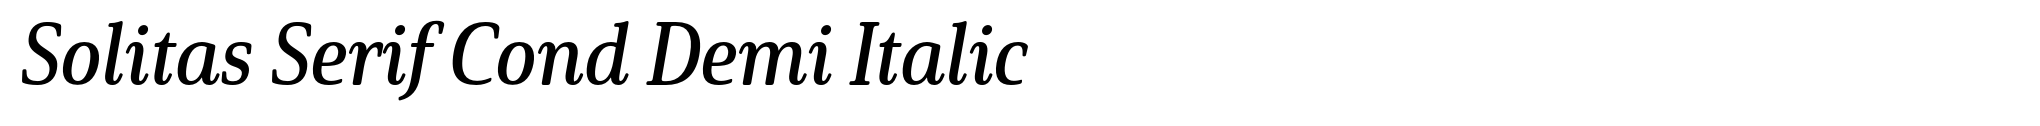 Solitas Serif Cond Demi Italic image